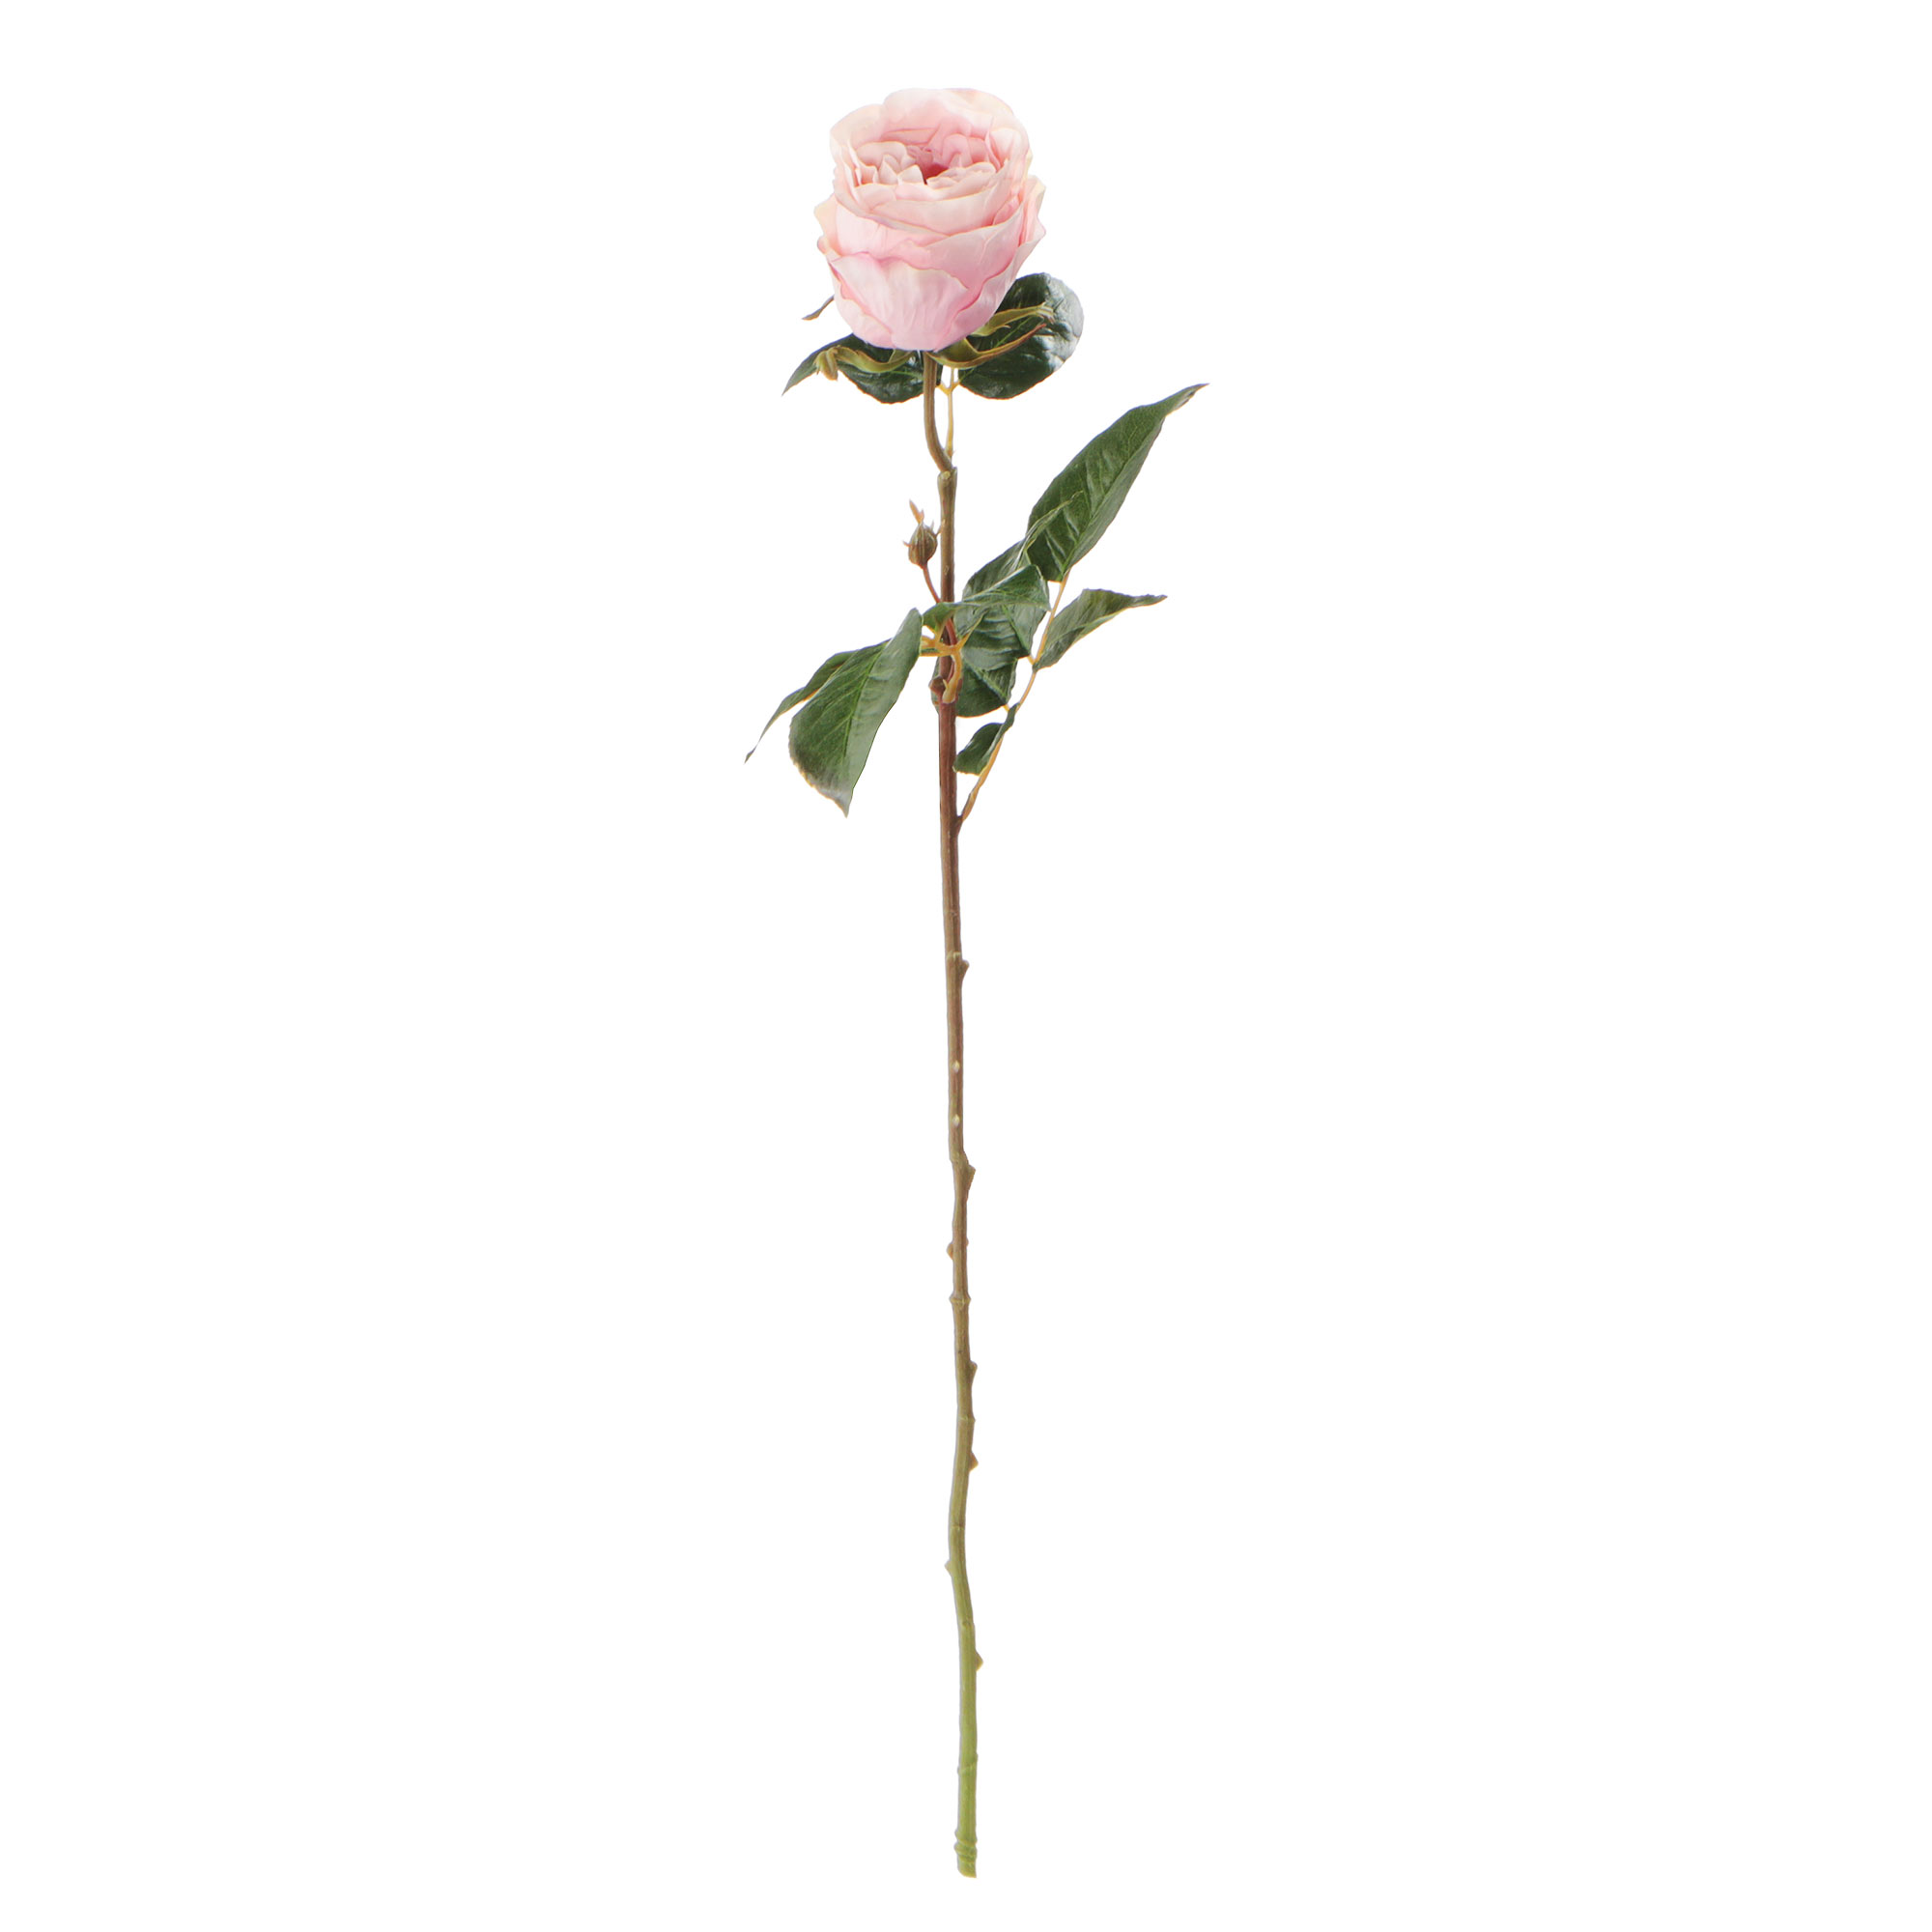 Цветок искусственный Most flowers Роза Герцогиня нежно-розовая цветок искусственный most flowers мак бело розовый цветок и нераспустившийся бутон